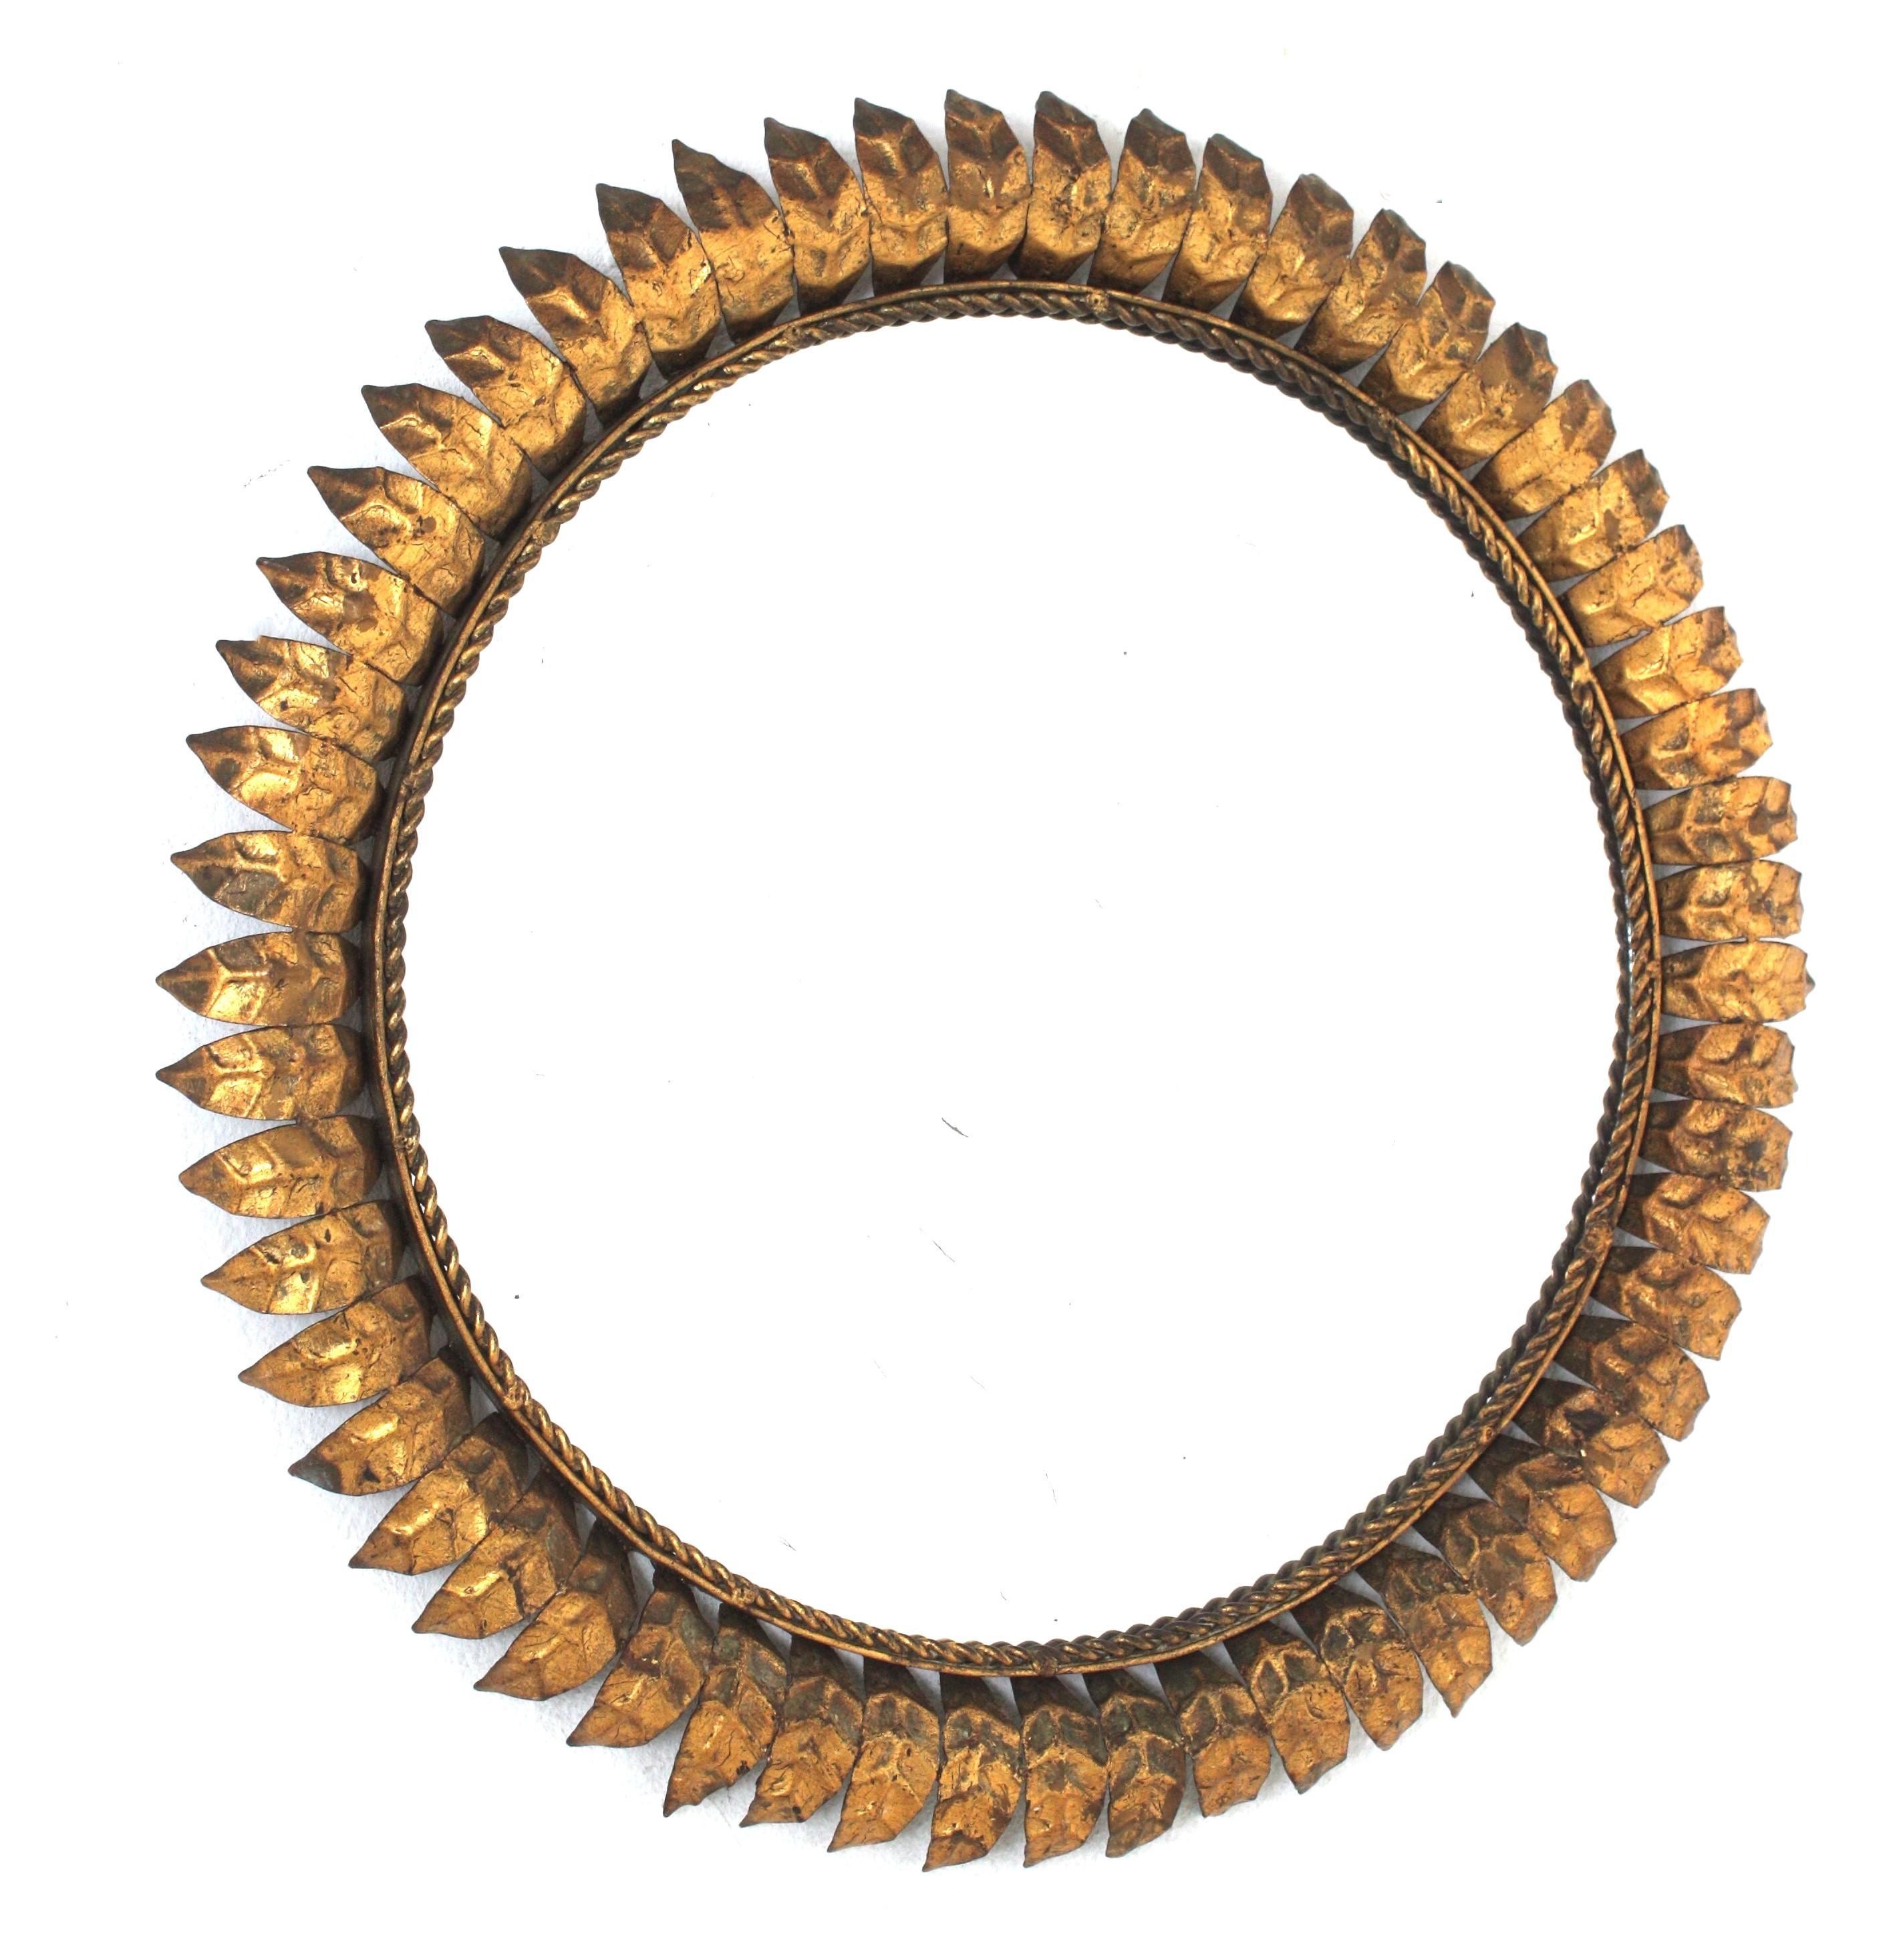 Moderner runder Spiegel aus Eisen mit Sonnenschliff, Rahmen mit Blattgold, Spanien, 1950er Jahre.
Dieser auffällige Spiegel mit Sonnenschliff hat einen sehr detaillierten Rahmen, der vollständig aus vergoldetem Eisen gefertigt ist und seine